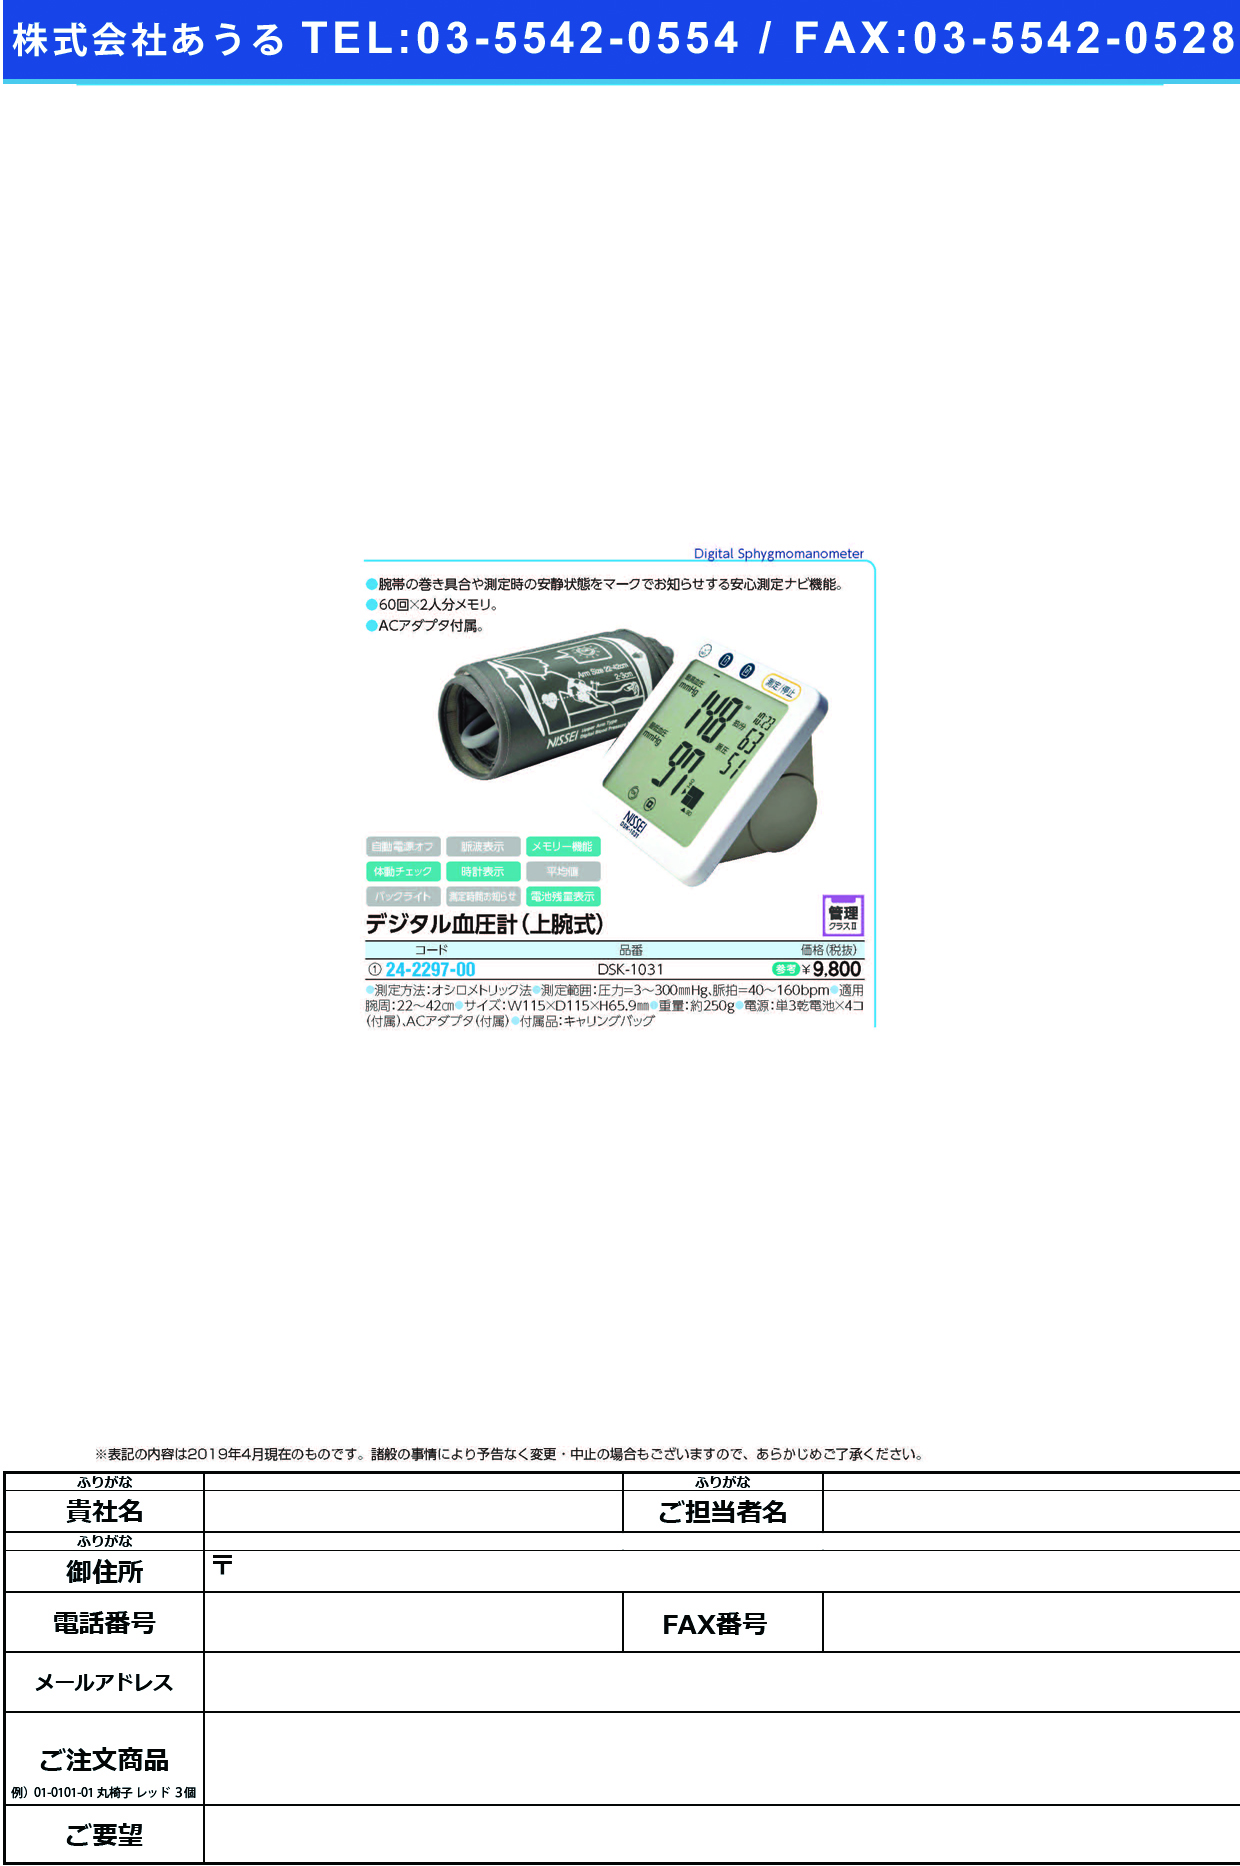 上腕式デジタル血圧計 DSK-1031 ｼﾞｮｳﾜﾝｼｷﾃﾞｼﾞﾀﾙｹﾂｱﾂｹｲ(日本精密測器)